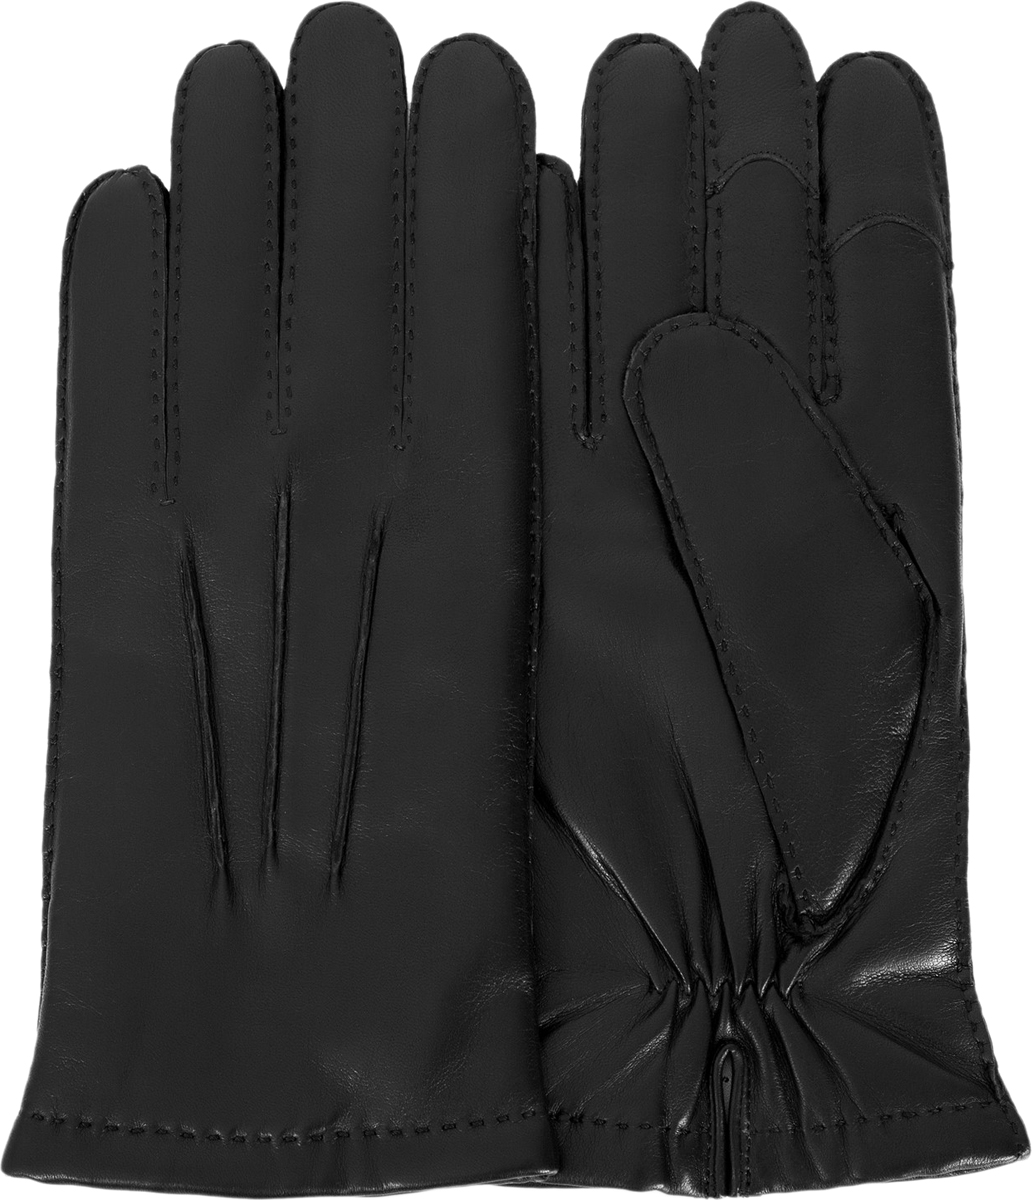 Перчатки мужские Michel Katana, цвет: черный. i.K100-BERGER/BL. Размер 8